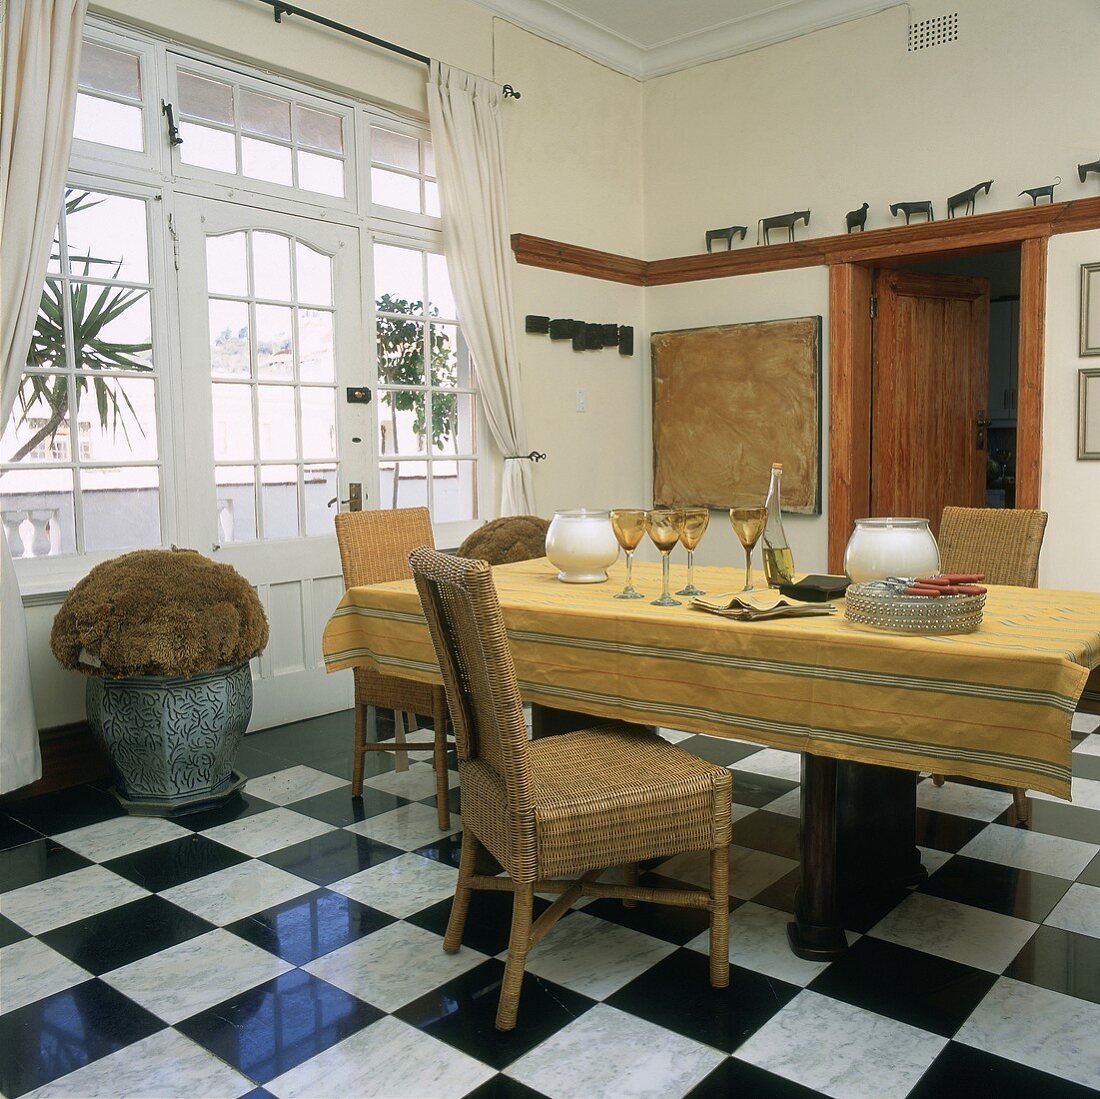 Esszimmer mit Marmorfliesen im Schachbrettmuster, einem großen Esstisch mit Tischdecke und Körbstühlen